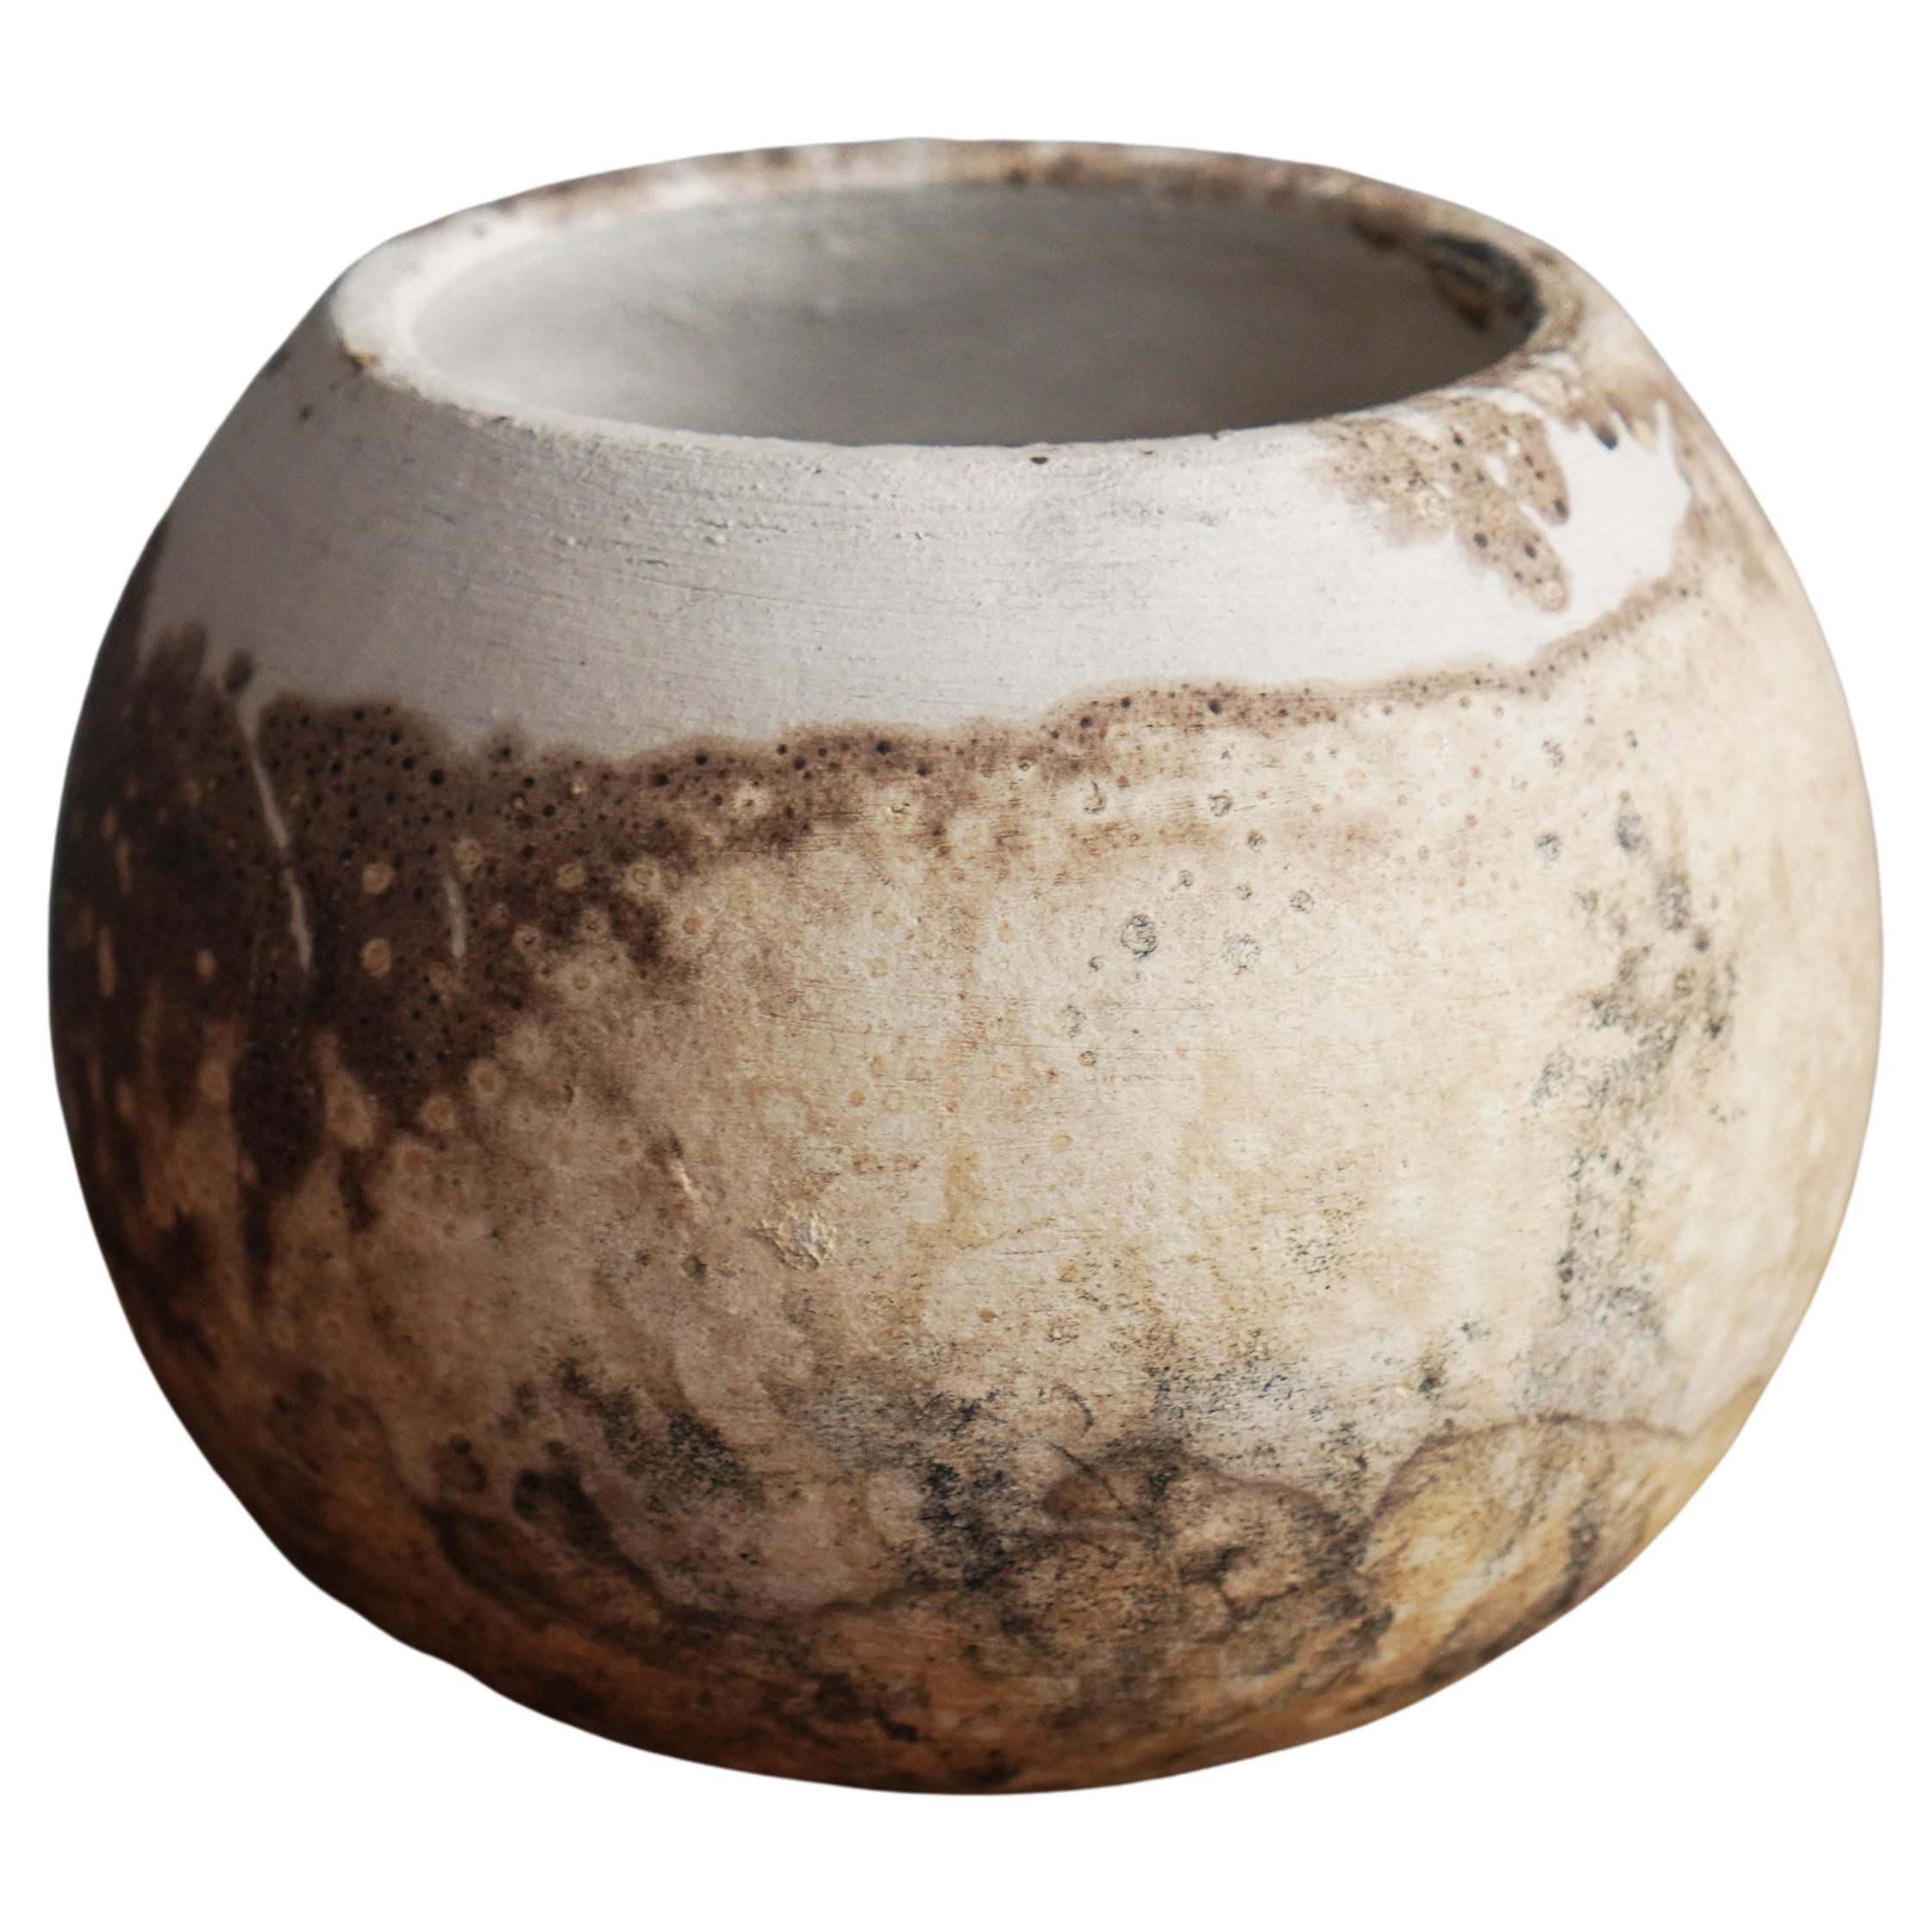 Zen Raku Pottery Vase - Obvara - Handmade Ceramic Home Decor Gift For Sale